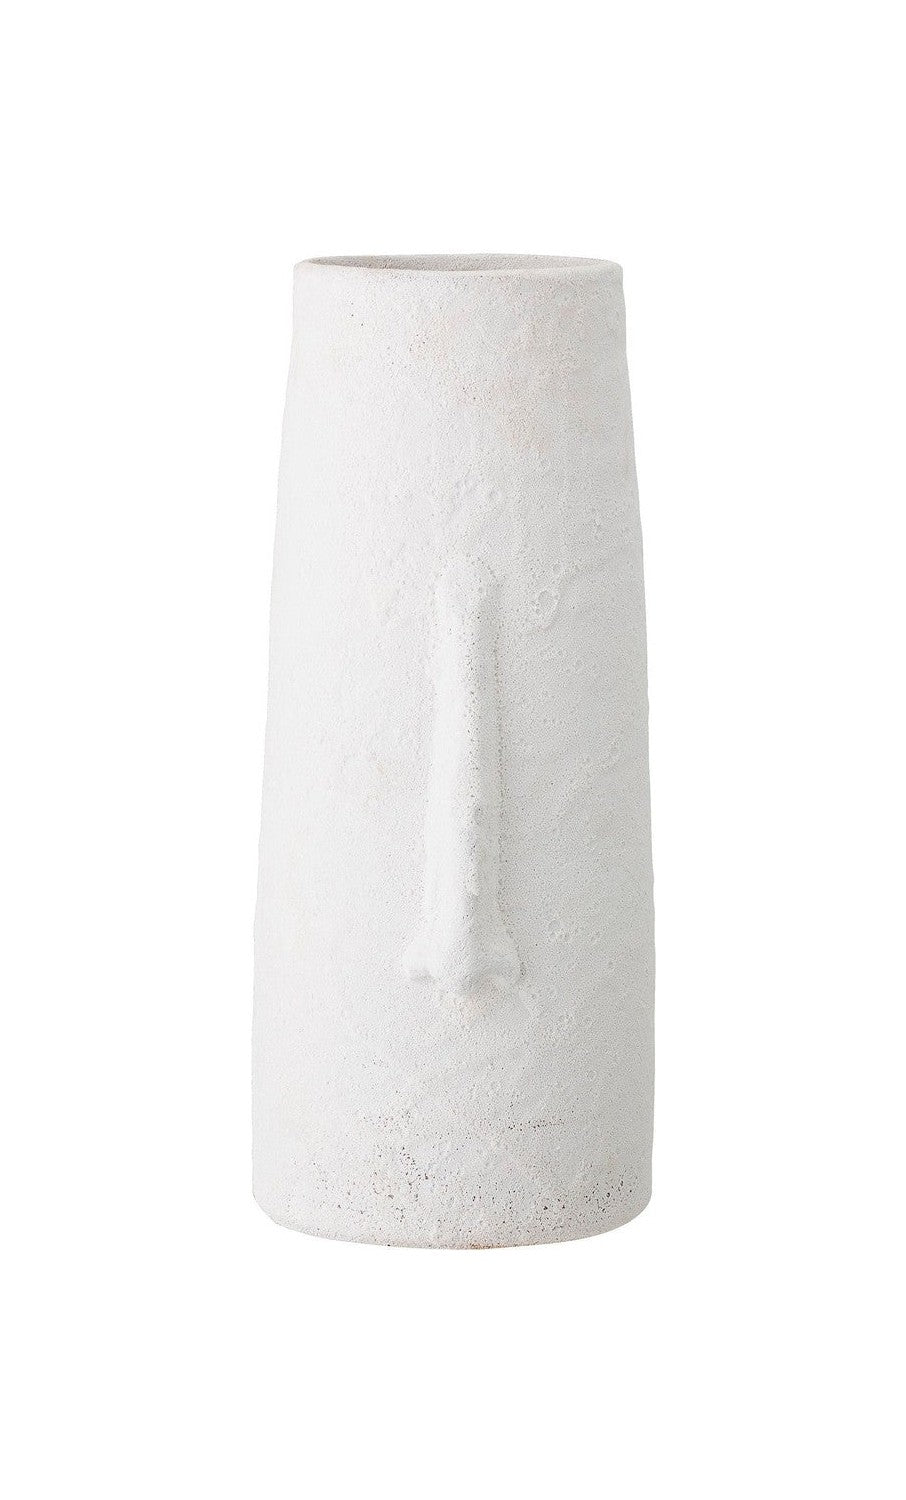 Bloomingville Berican Deco váza, bílá, terakota